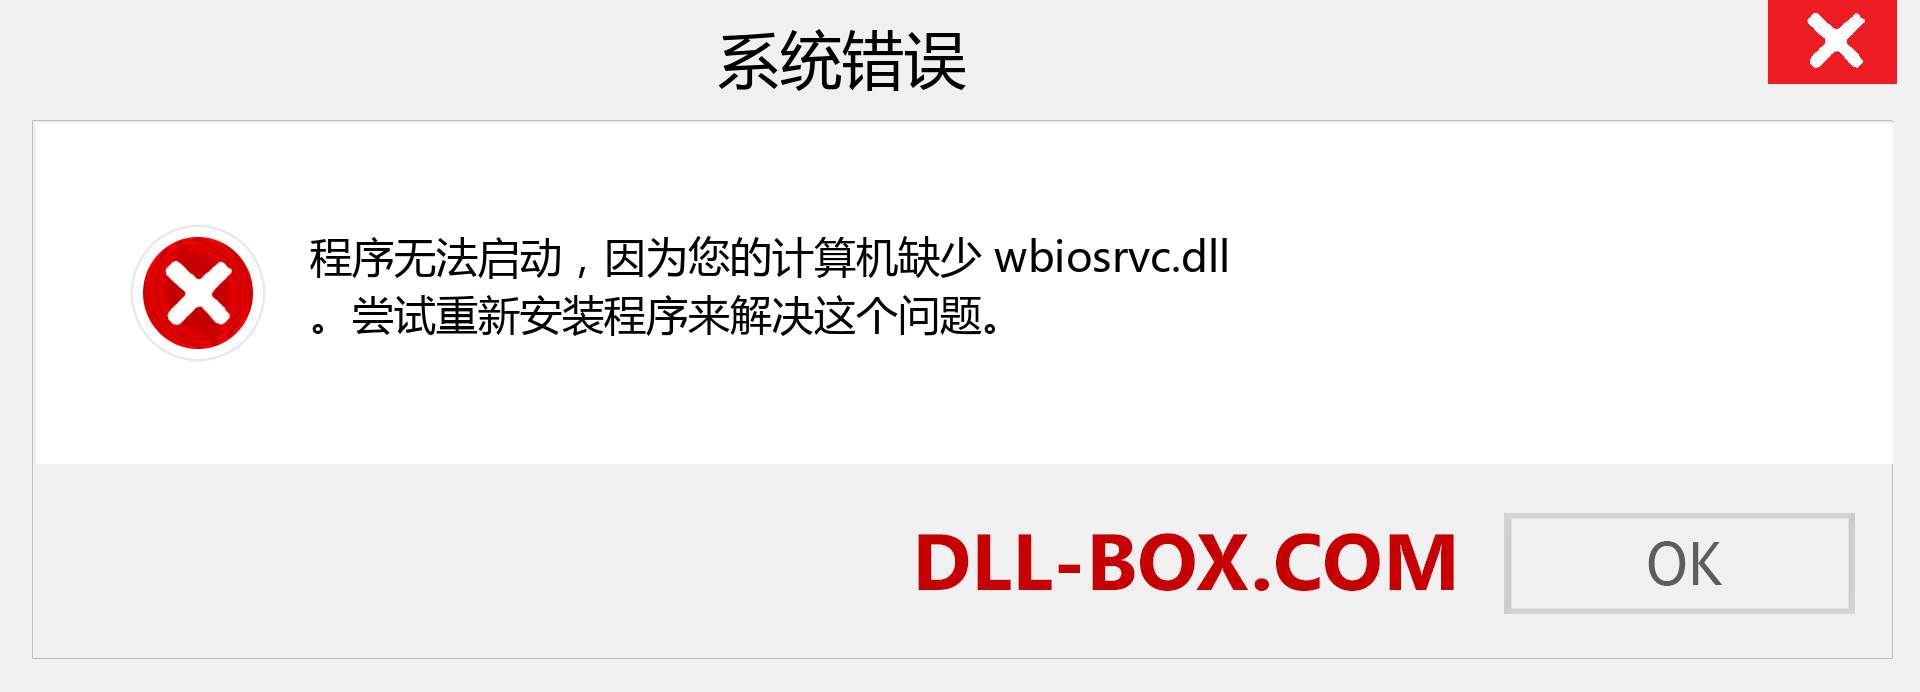 wbiosrvc.dll 文件丢失？。 适用于 Windows 7、8、10 的下载 - 修复 Windows、照片、图像上的 wbiosrvc dll 丢失错误